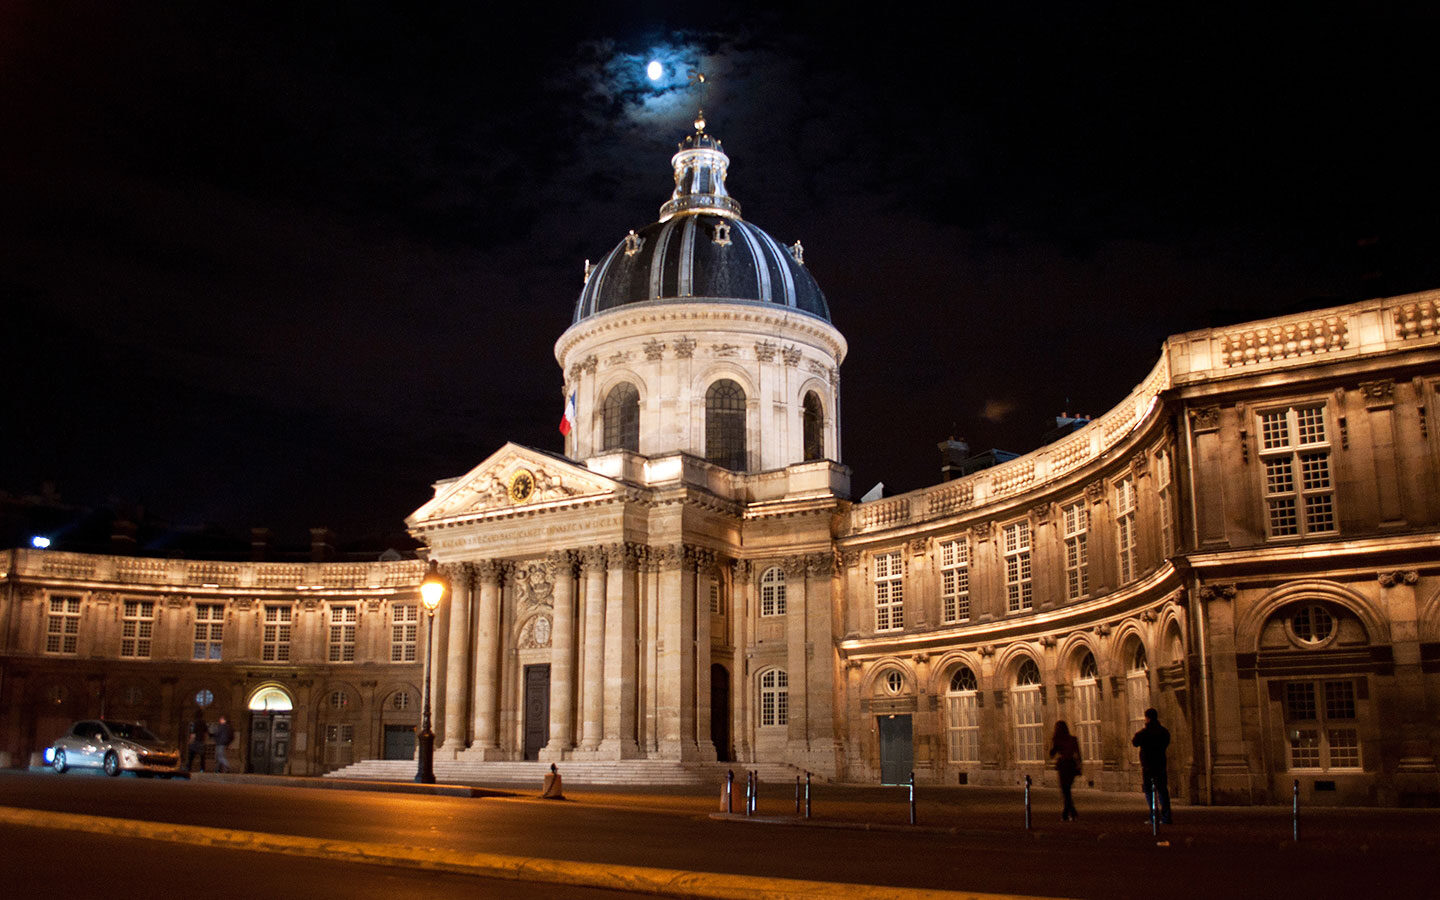 The Institut de France in Paris illuminated at night